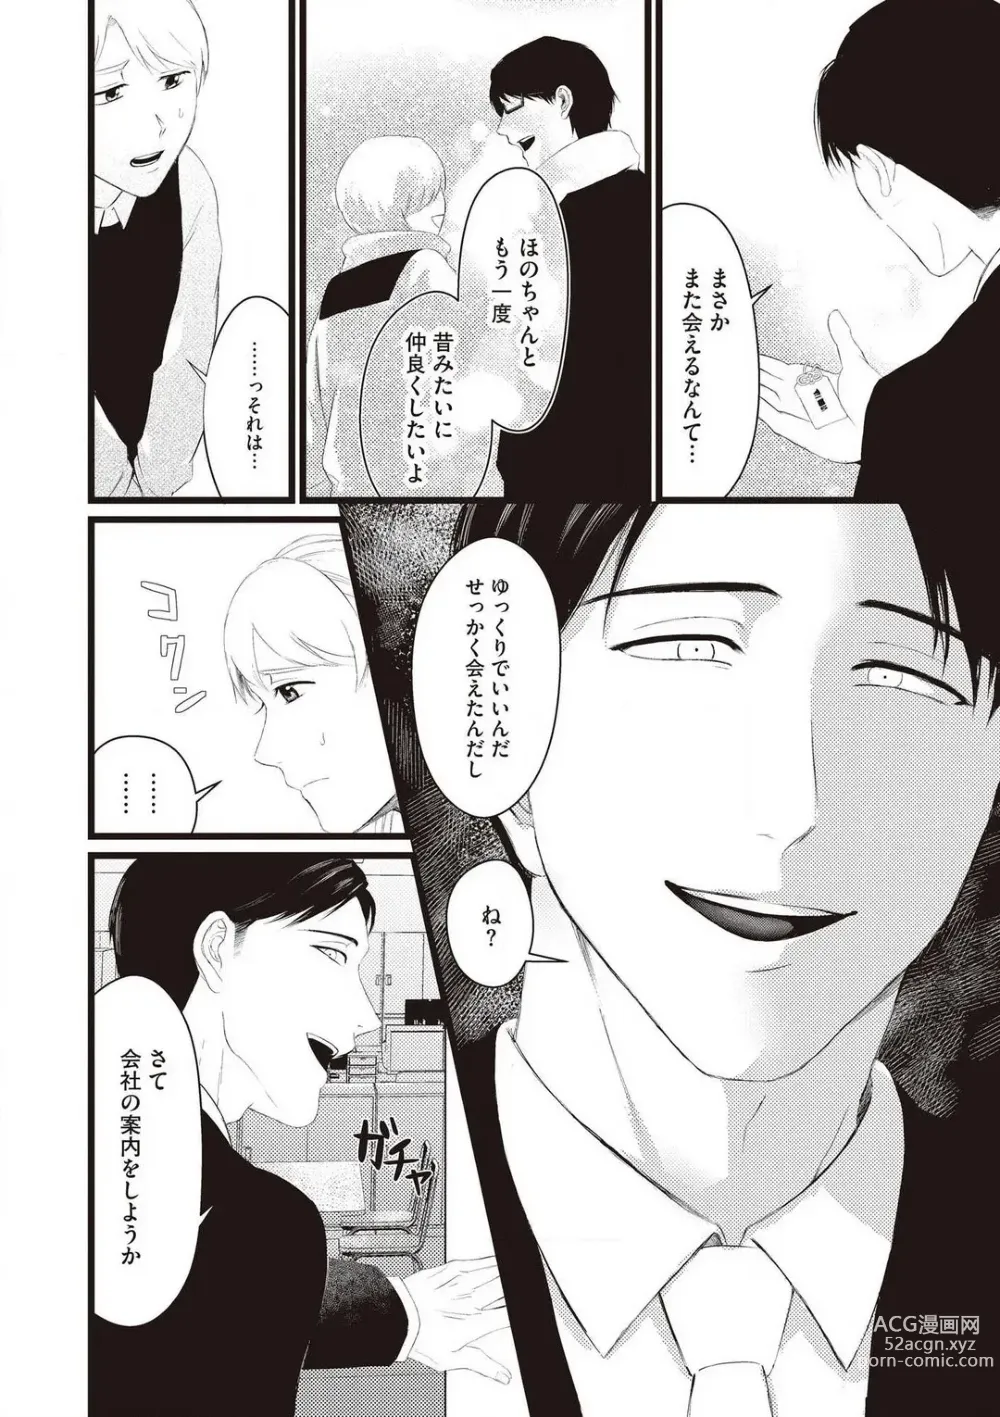 Page 10 of manga Hatsukoi Osananajimi no Ai no Moukou Nogarerarenai Saikai H